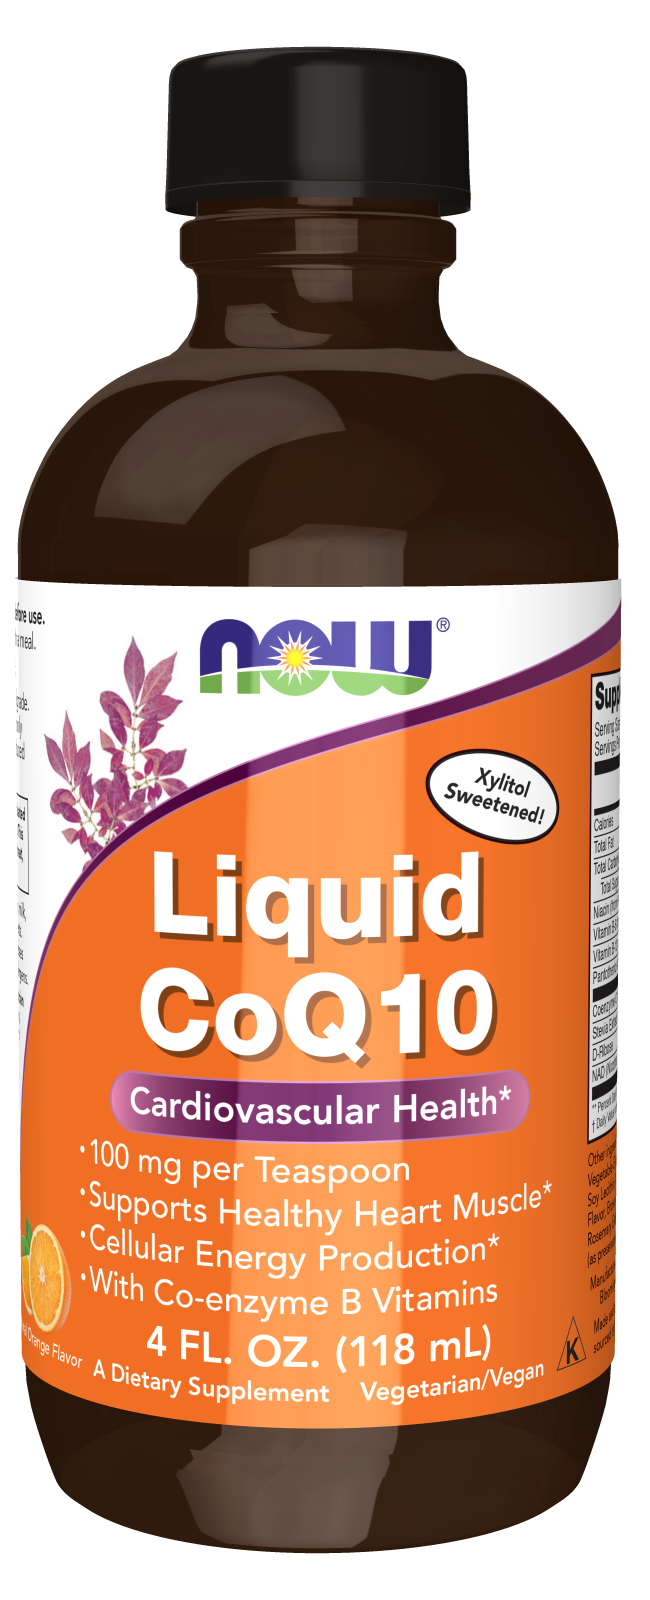 CoQ10 Liquid - 4 fl. oz. Bottle Front